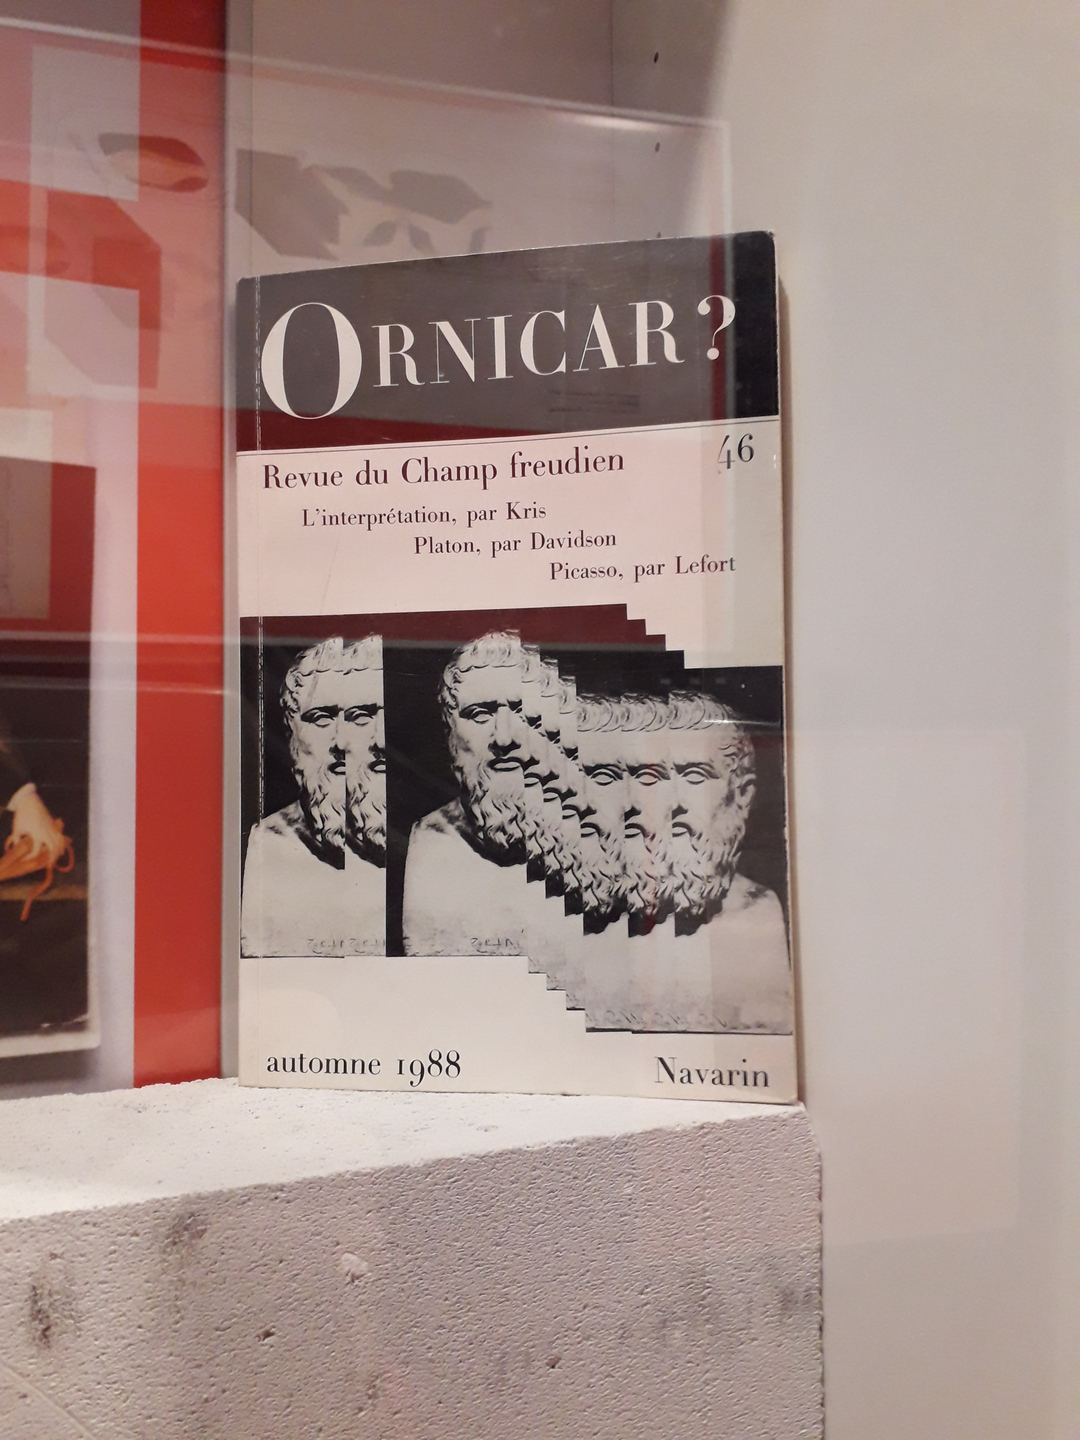 Couverture d'un livre intitulé Ornicar? avec un visuel de statue dupliqué et décalé